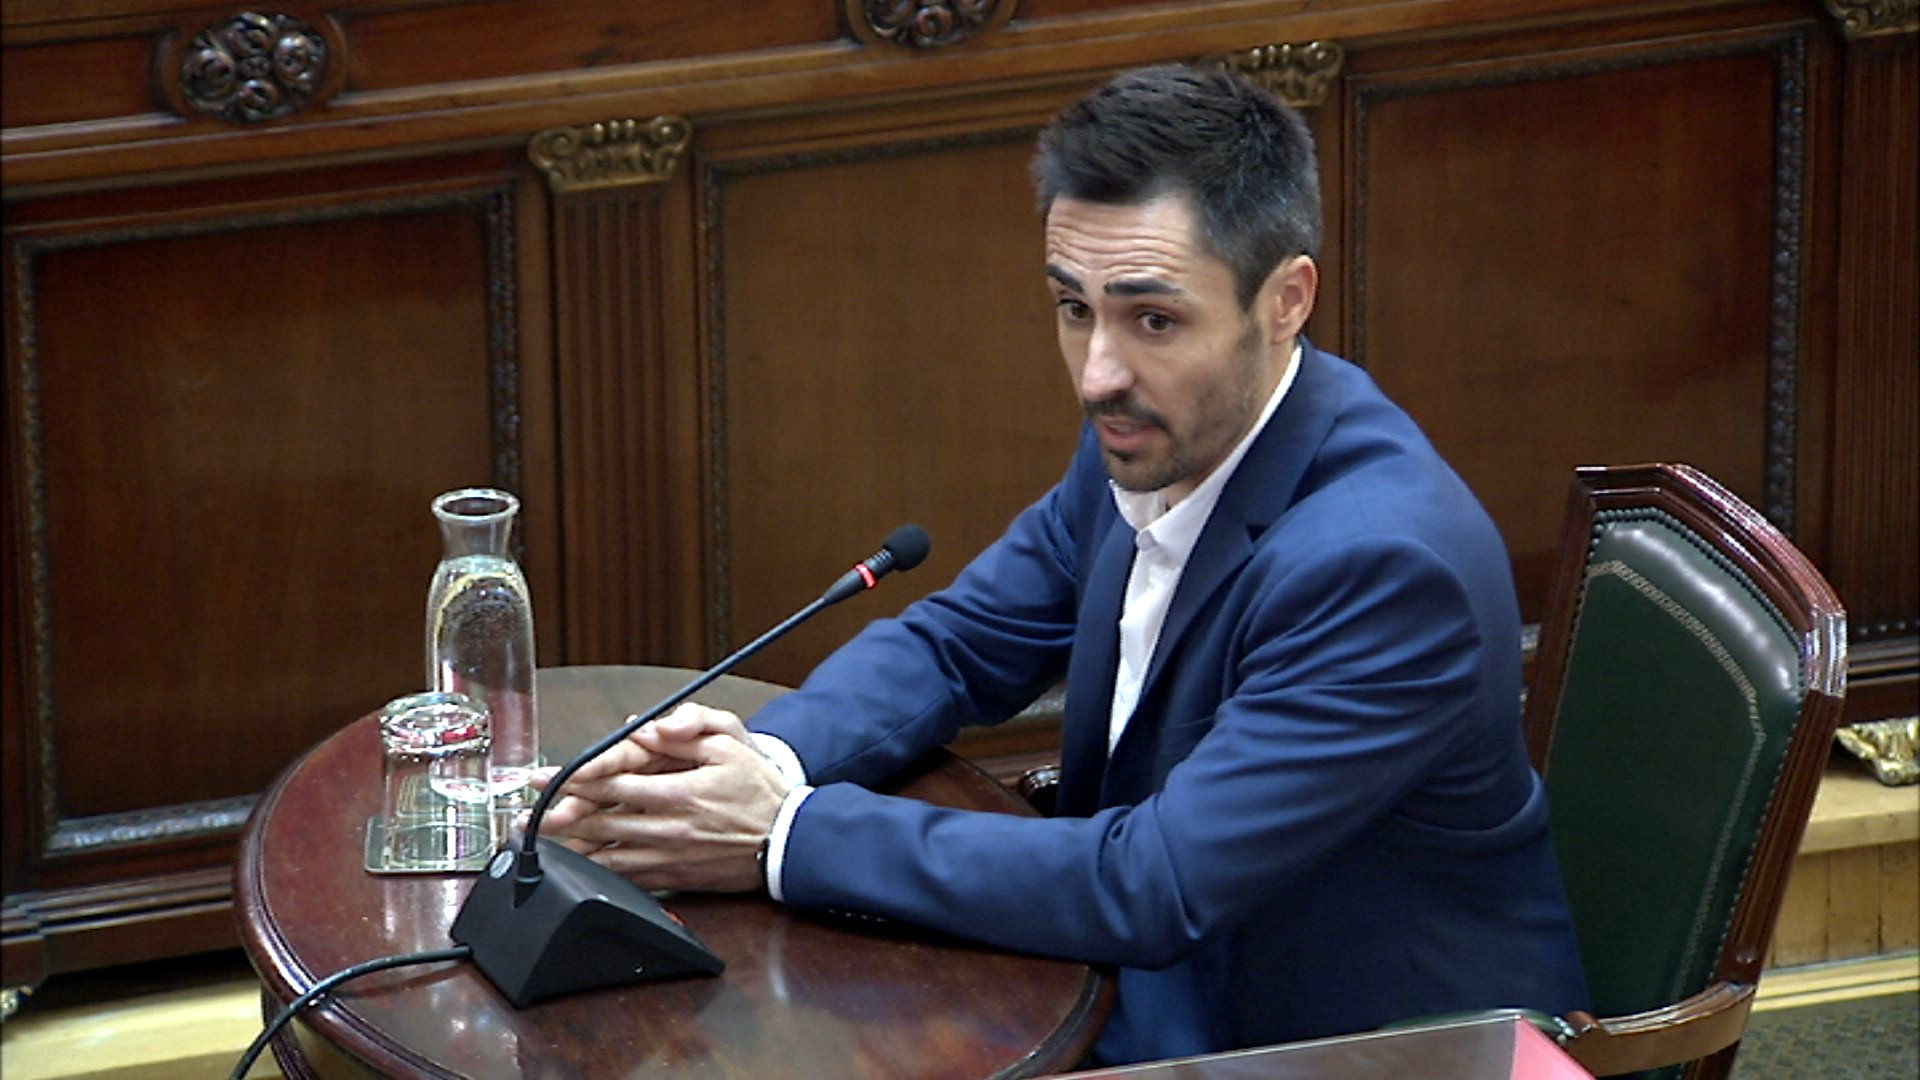 L'alcalde de Sant Julià de Ramis, on votava Puigdemont: 'La Guàrdia Civil va anar a buscar directament els veïns'